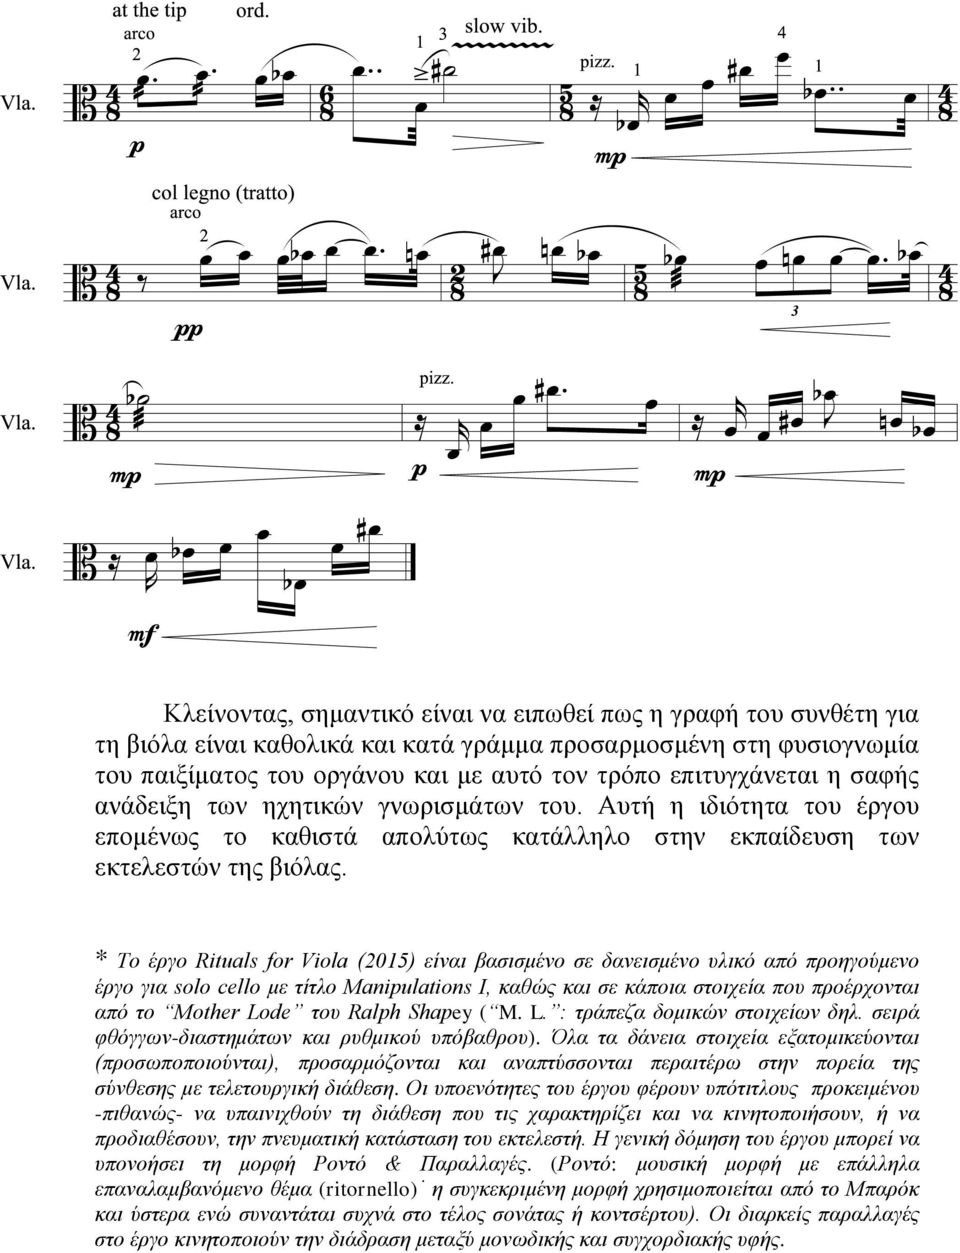 * Το έργο Rituals for Viola (2015) είναι βασισμένο σε δανεισμένο υλικό από προηγούμενο έργο για solo cello με τίτλο Manipulations I, καθώς και σε κάποια στοιχεία που προέρχονται από το Mother Lode